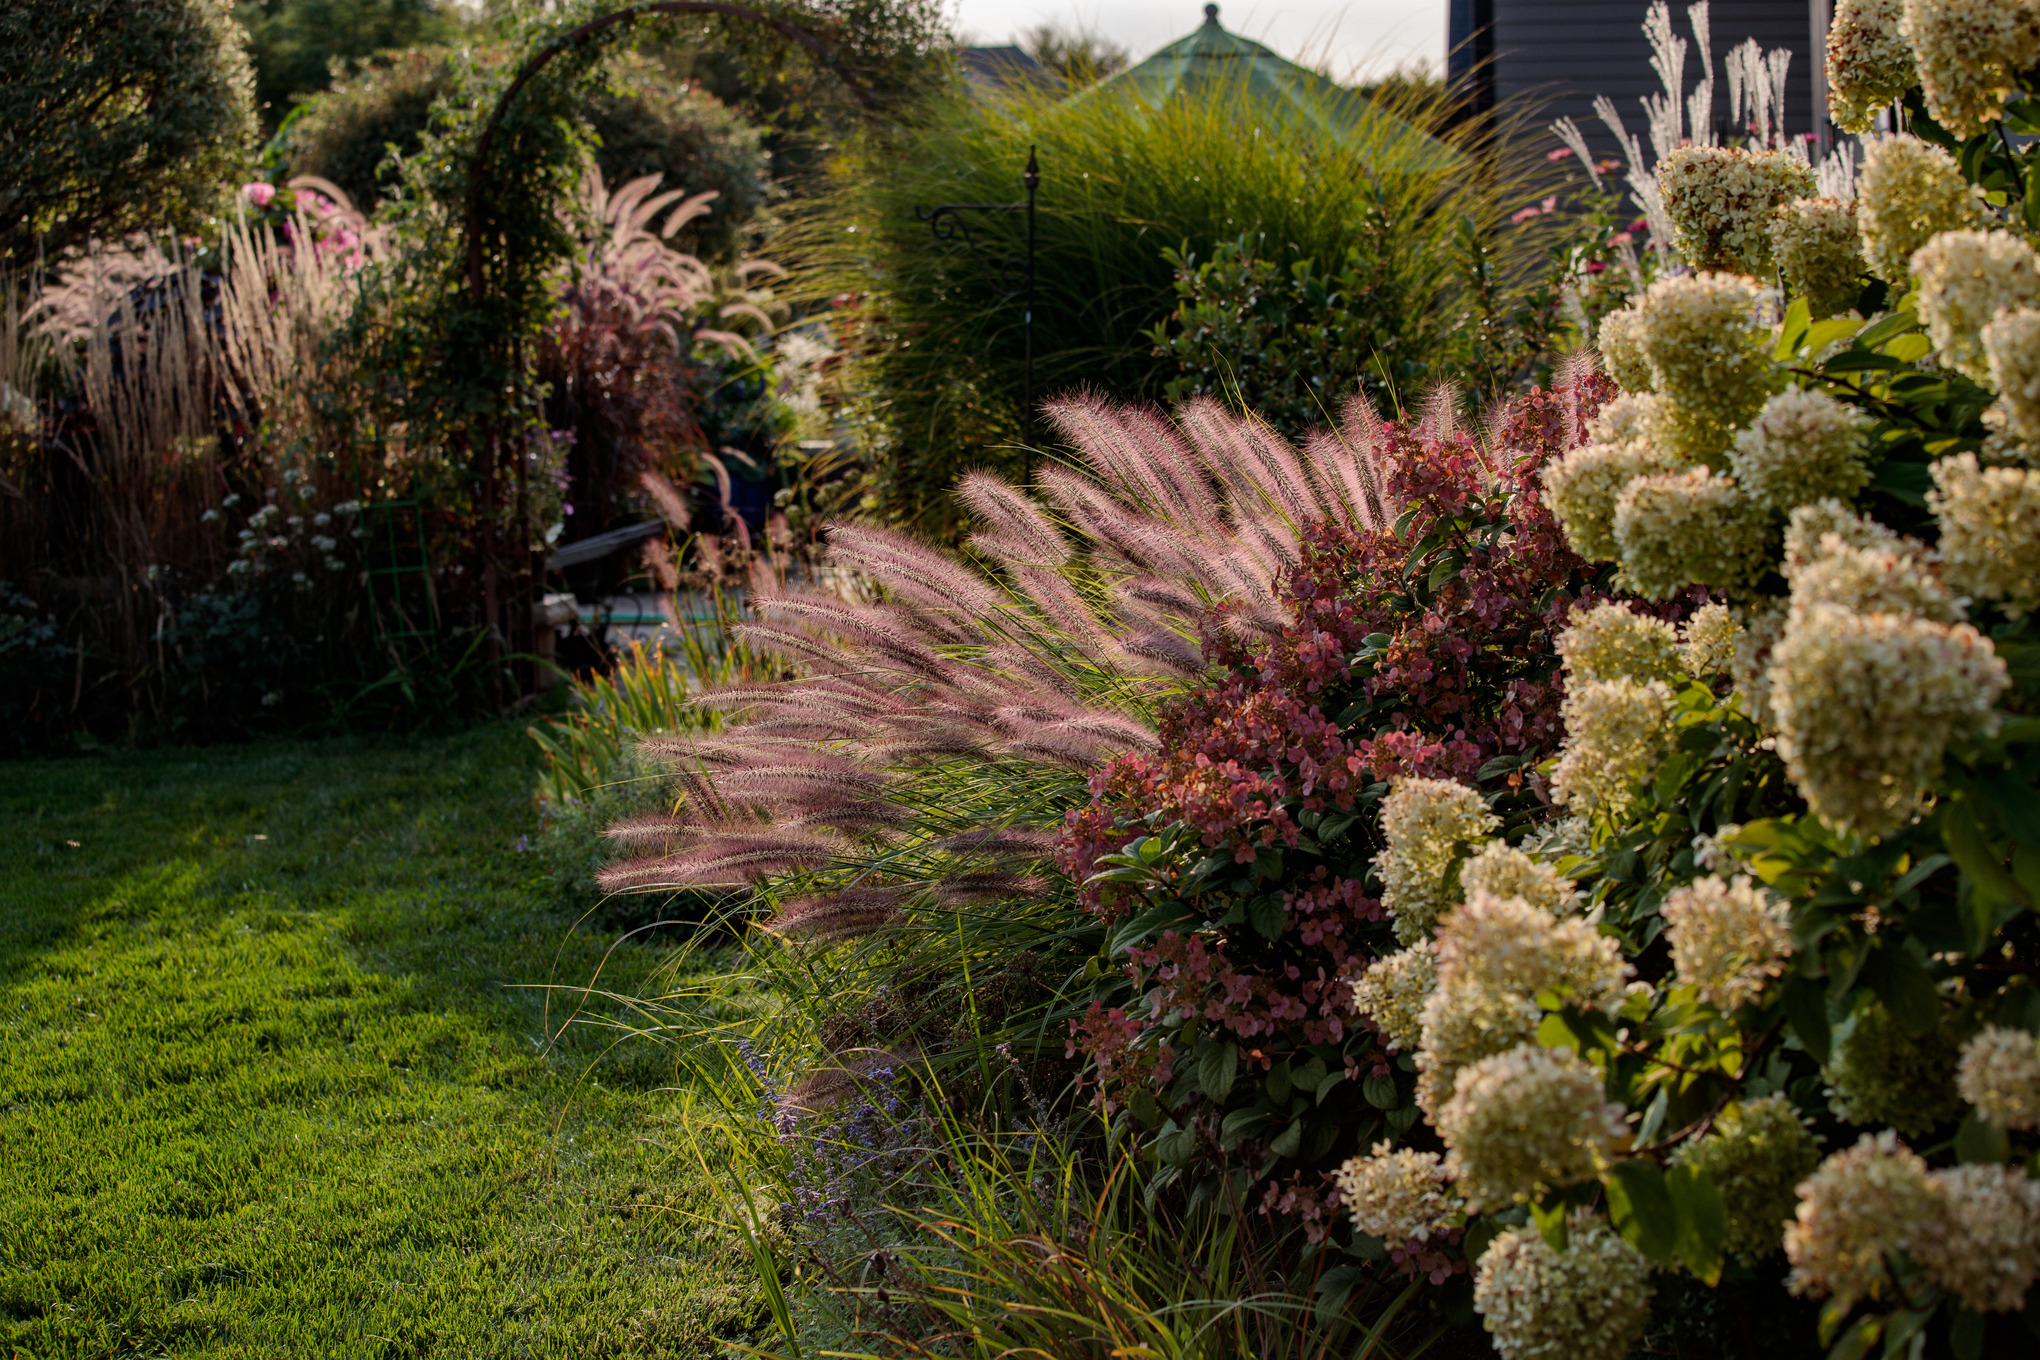 Graminées ornementales et arbustes à fleurs sur une pelouse, à l’arrière-plan une arche plantée et une cabane de jardin  